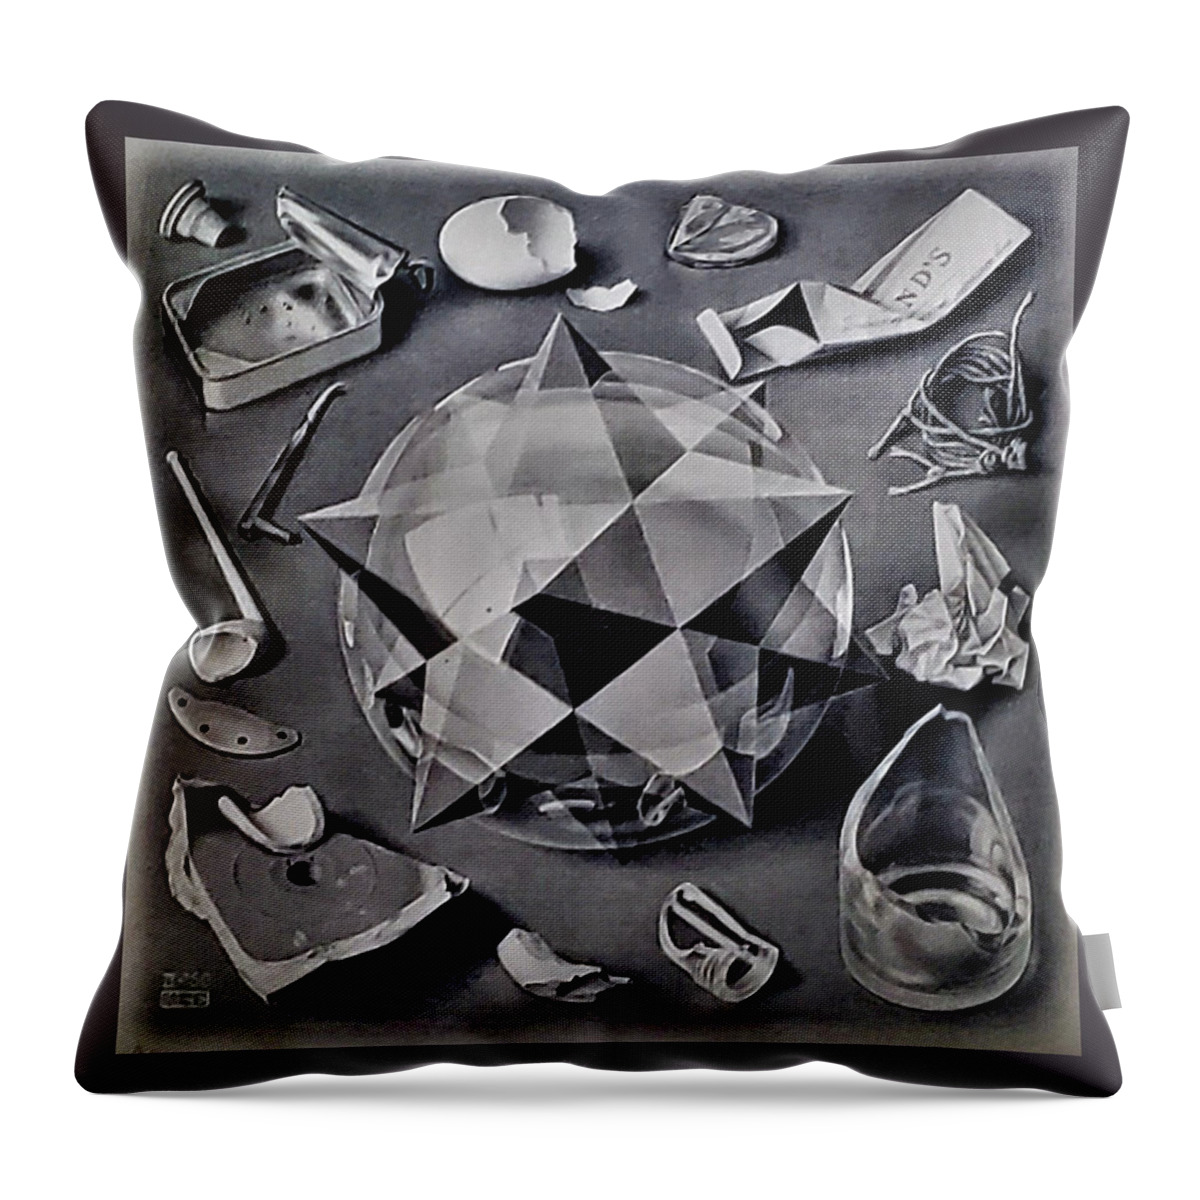 Maurits Cornelis Escher Throw Pillow featuring the photograph Escher 114 by Rob Hans